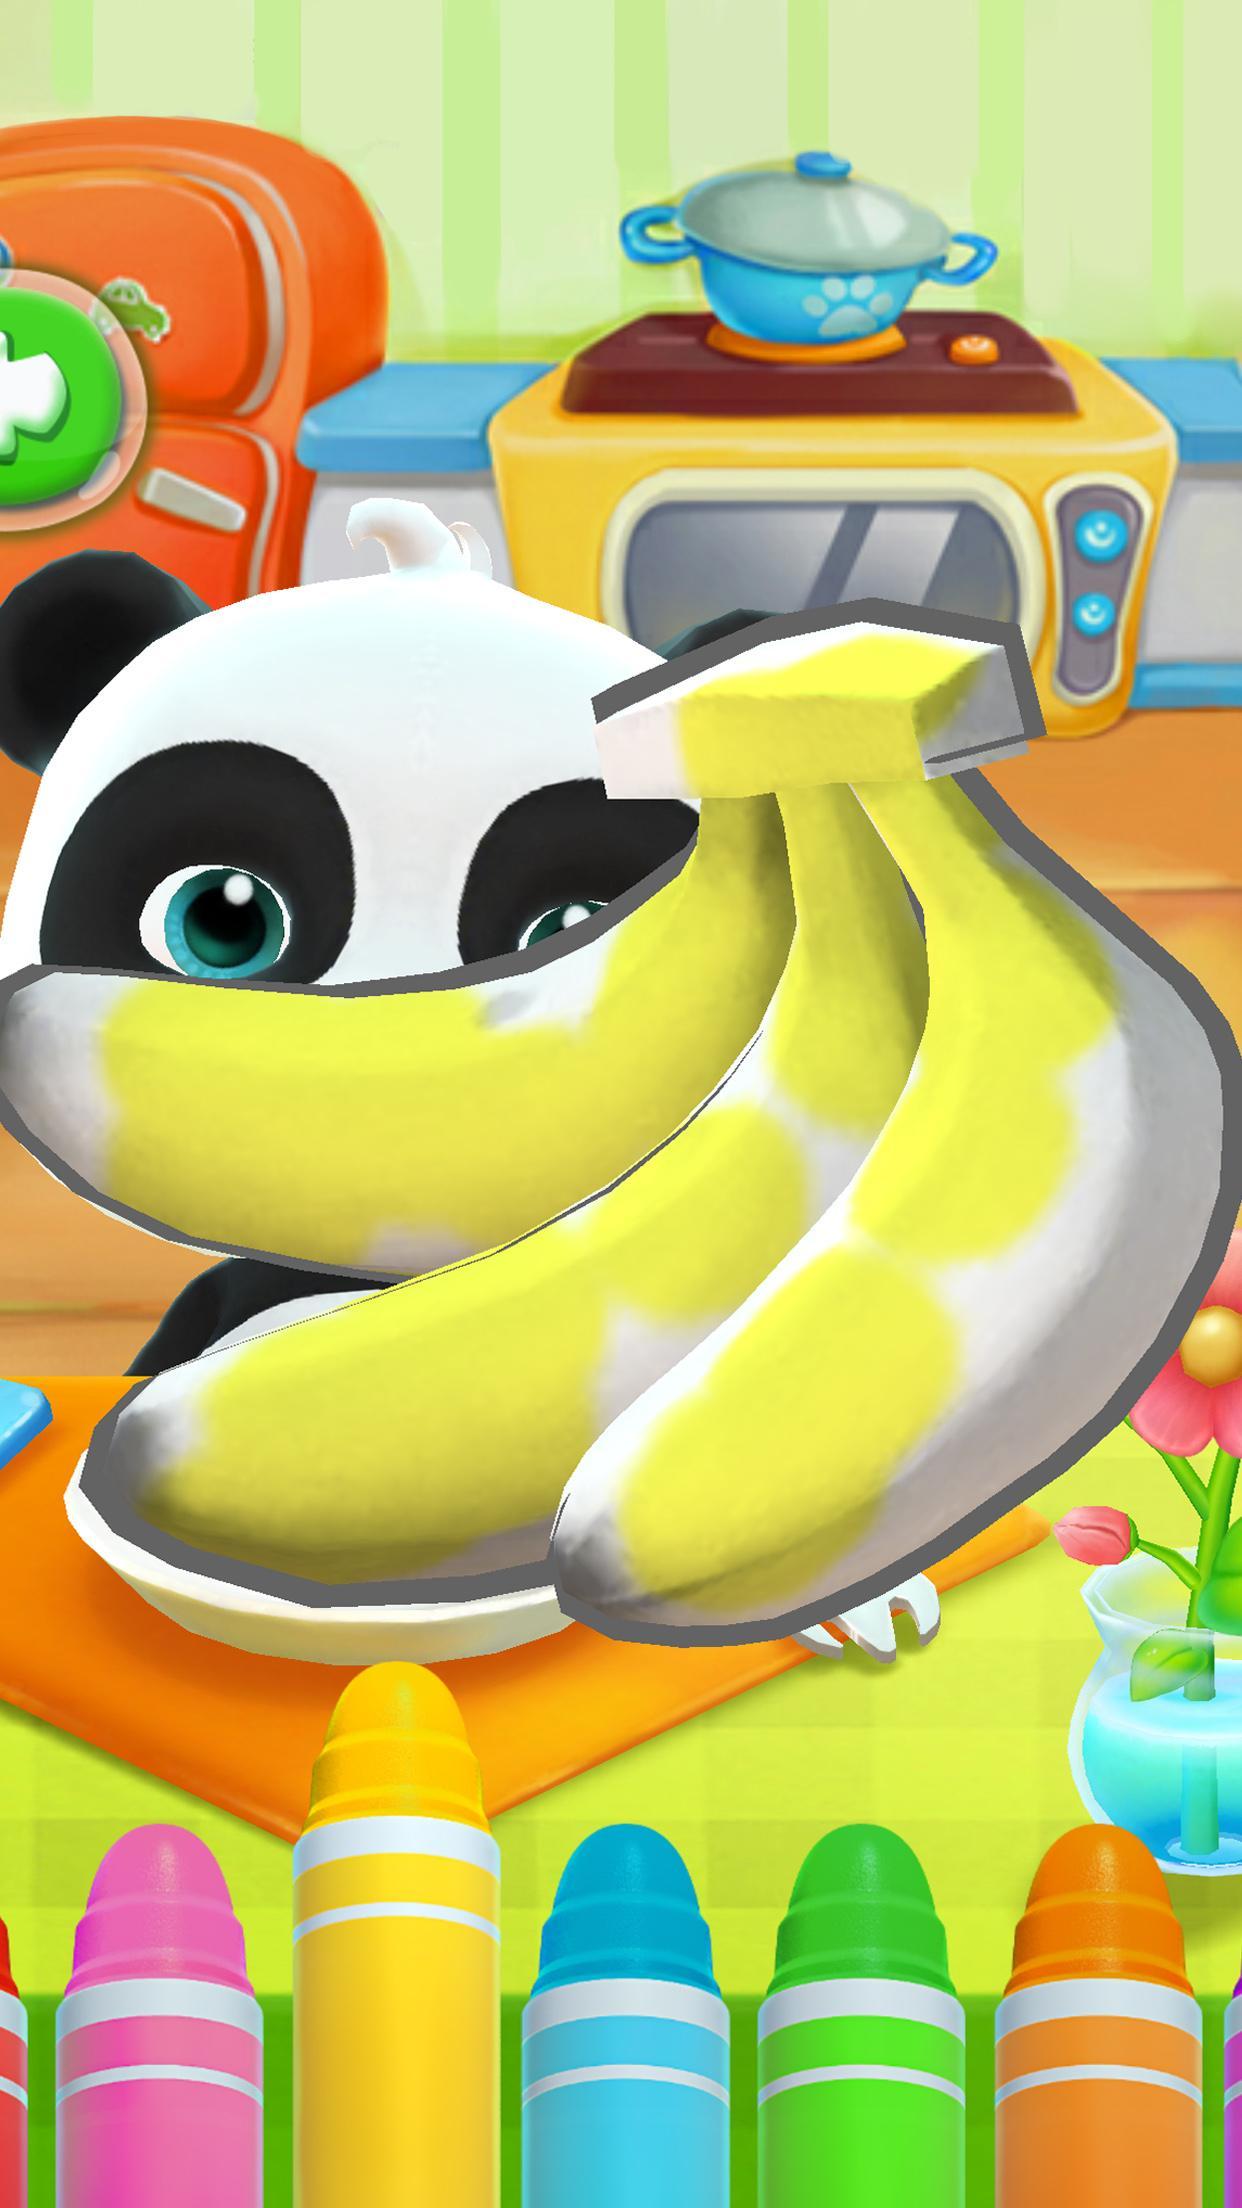 Talking Baby Panda - Kids Game 8.43.00.10 Screenshot 15